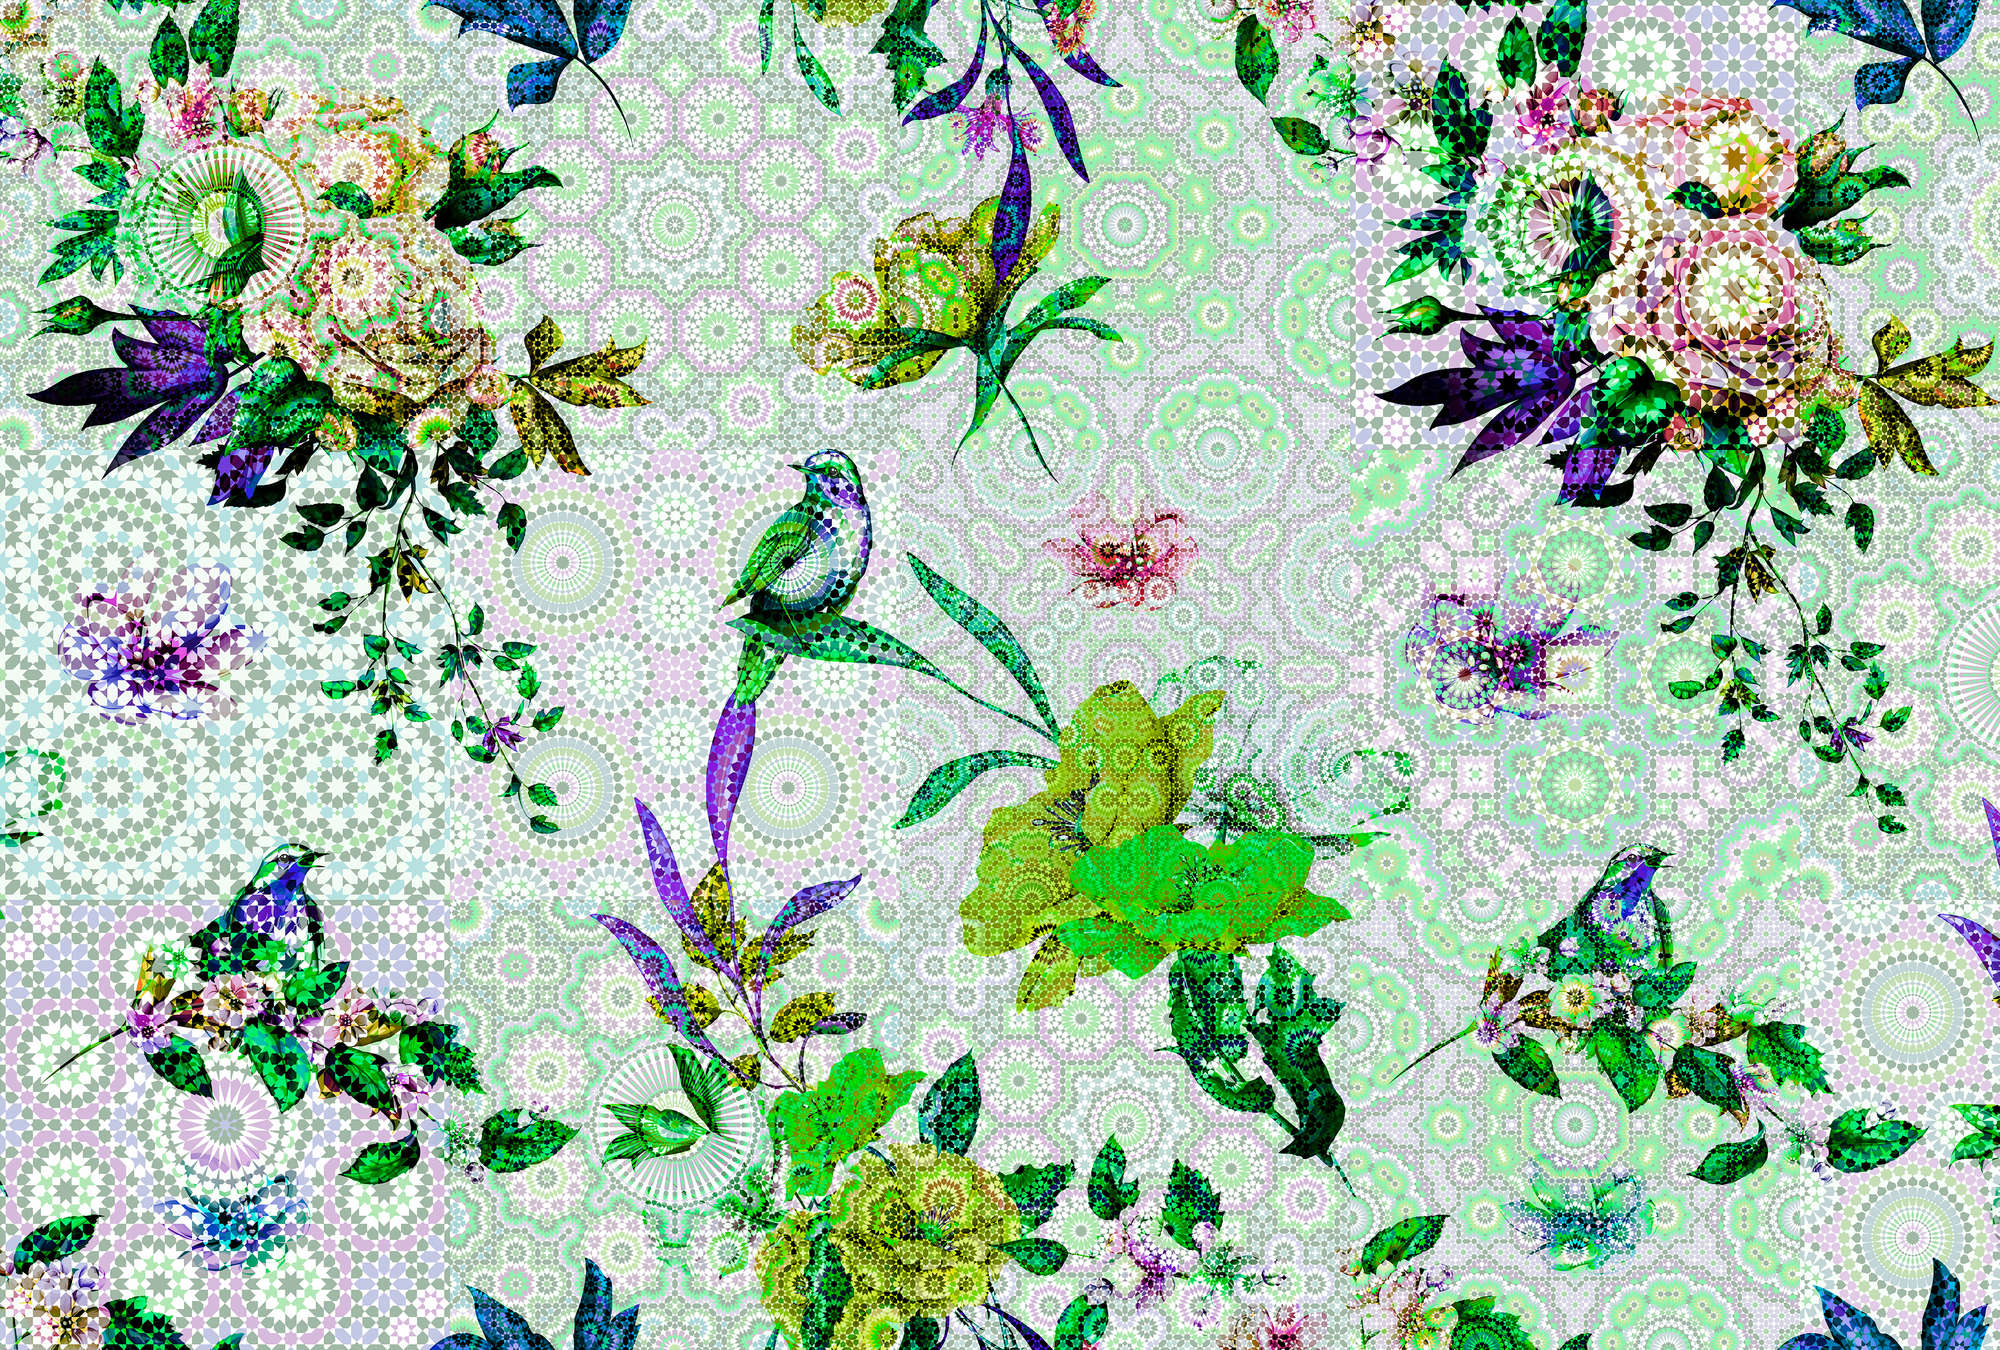             Fotomurali di fiori con design a mosaico moderno
        